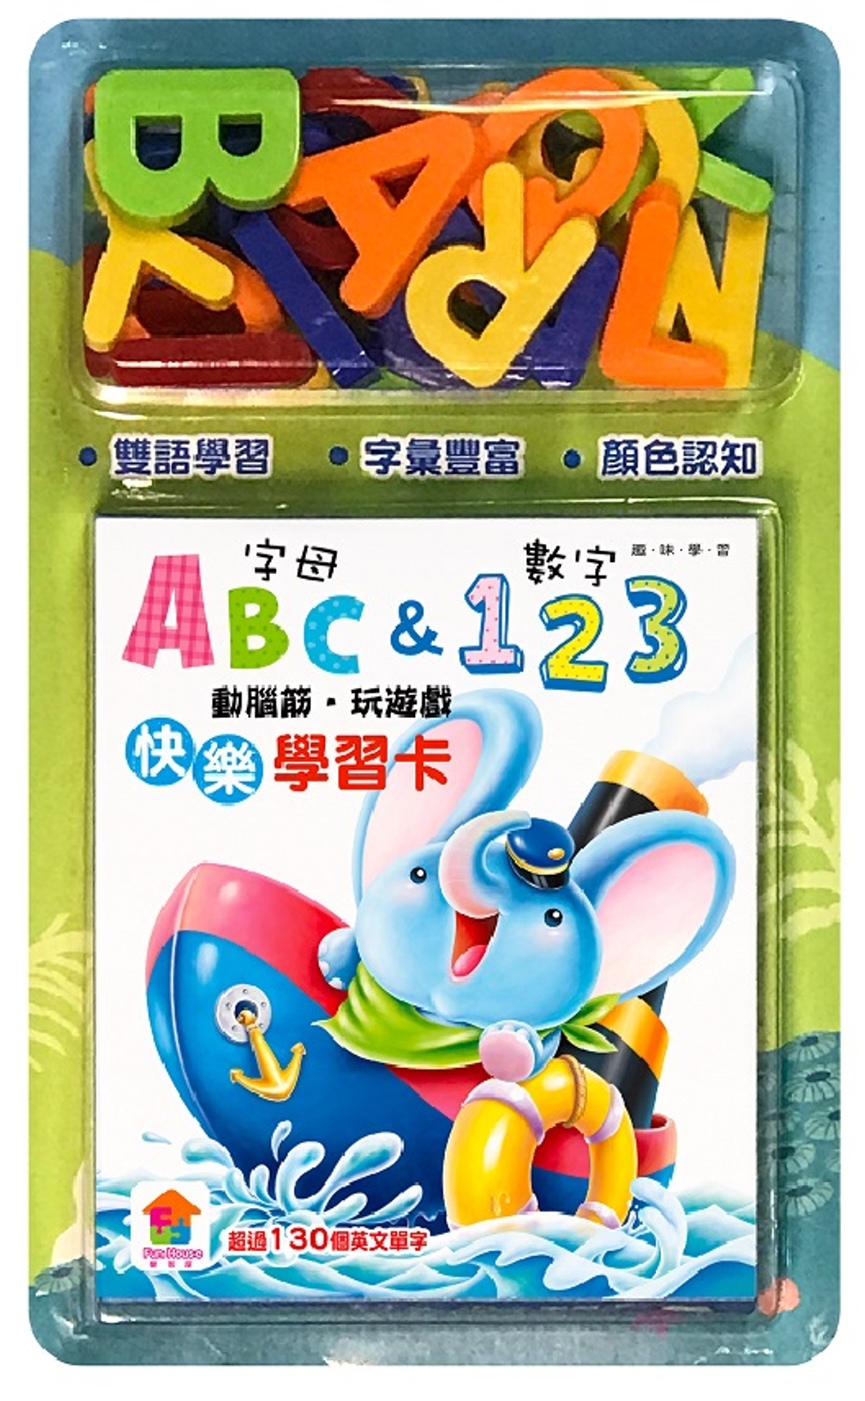 動腦筋‧玩遊戲，快樂學習卡：字母ABC&數字123（內附32張英文&字母單字學習卡、1組磁鐵學習組(26個大寫字母)）(限台灣)